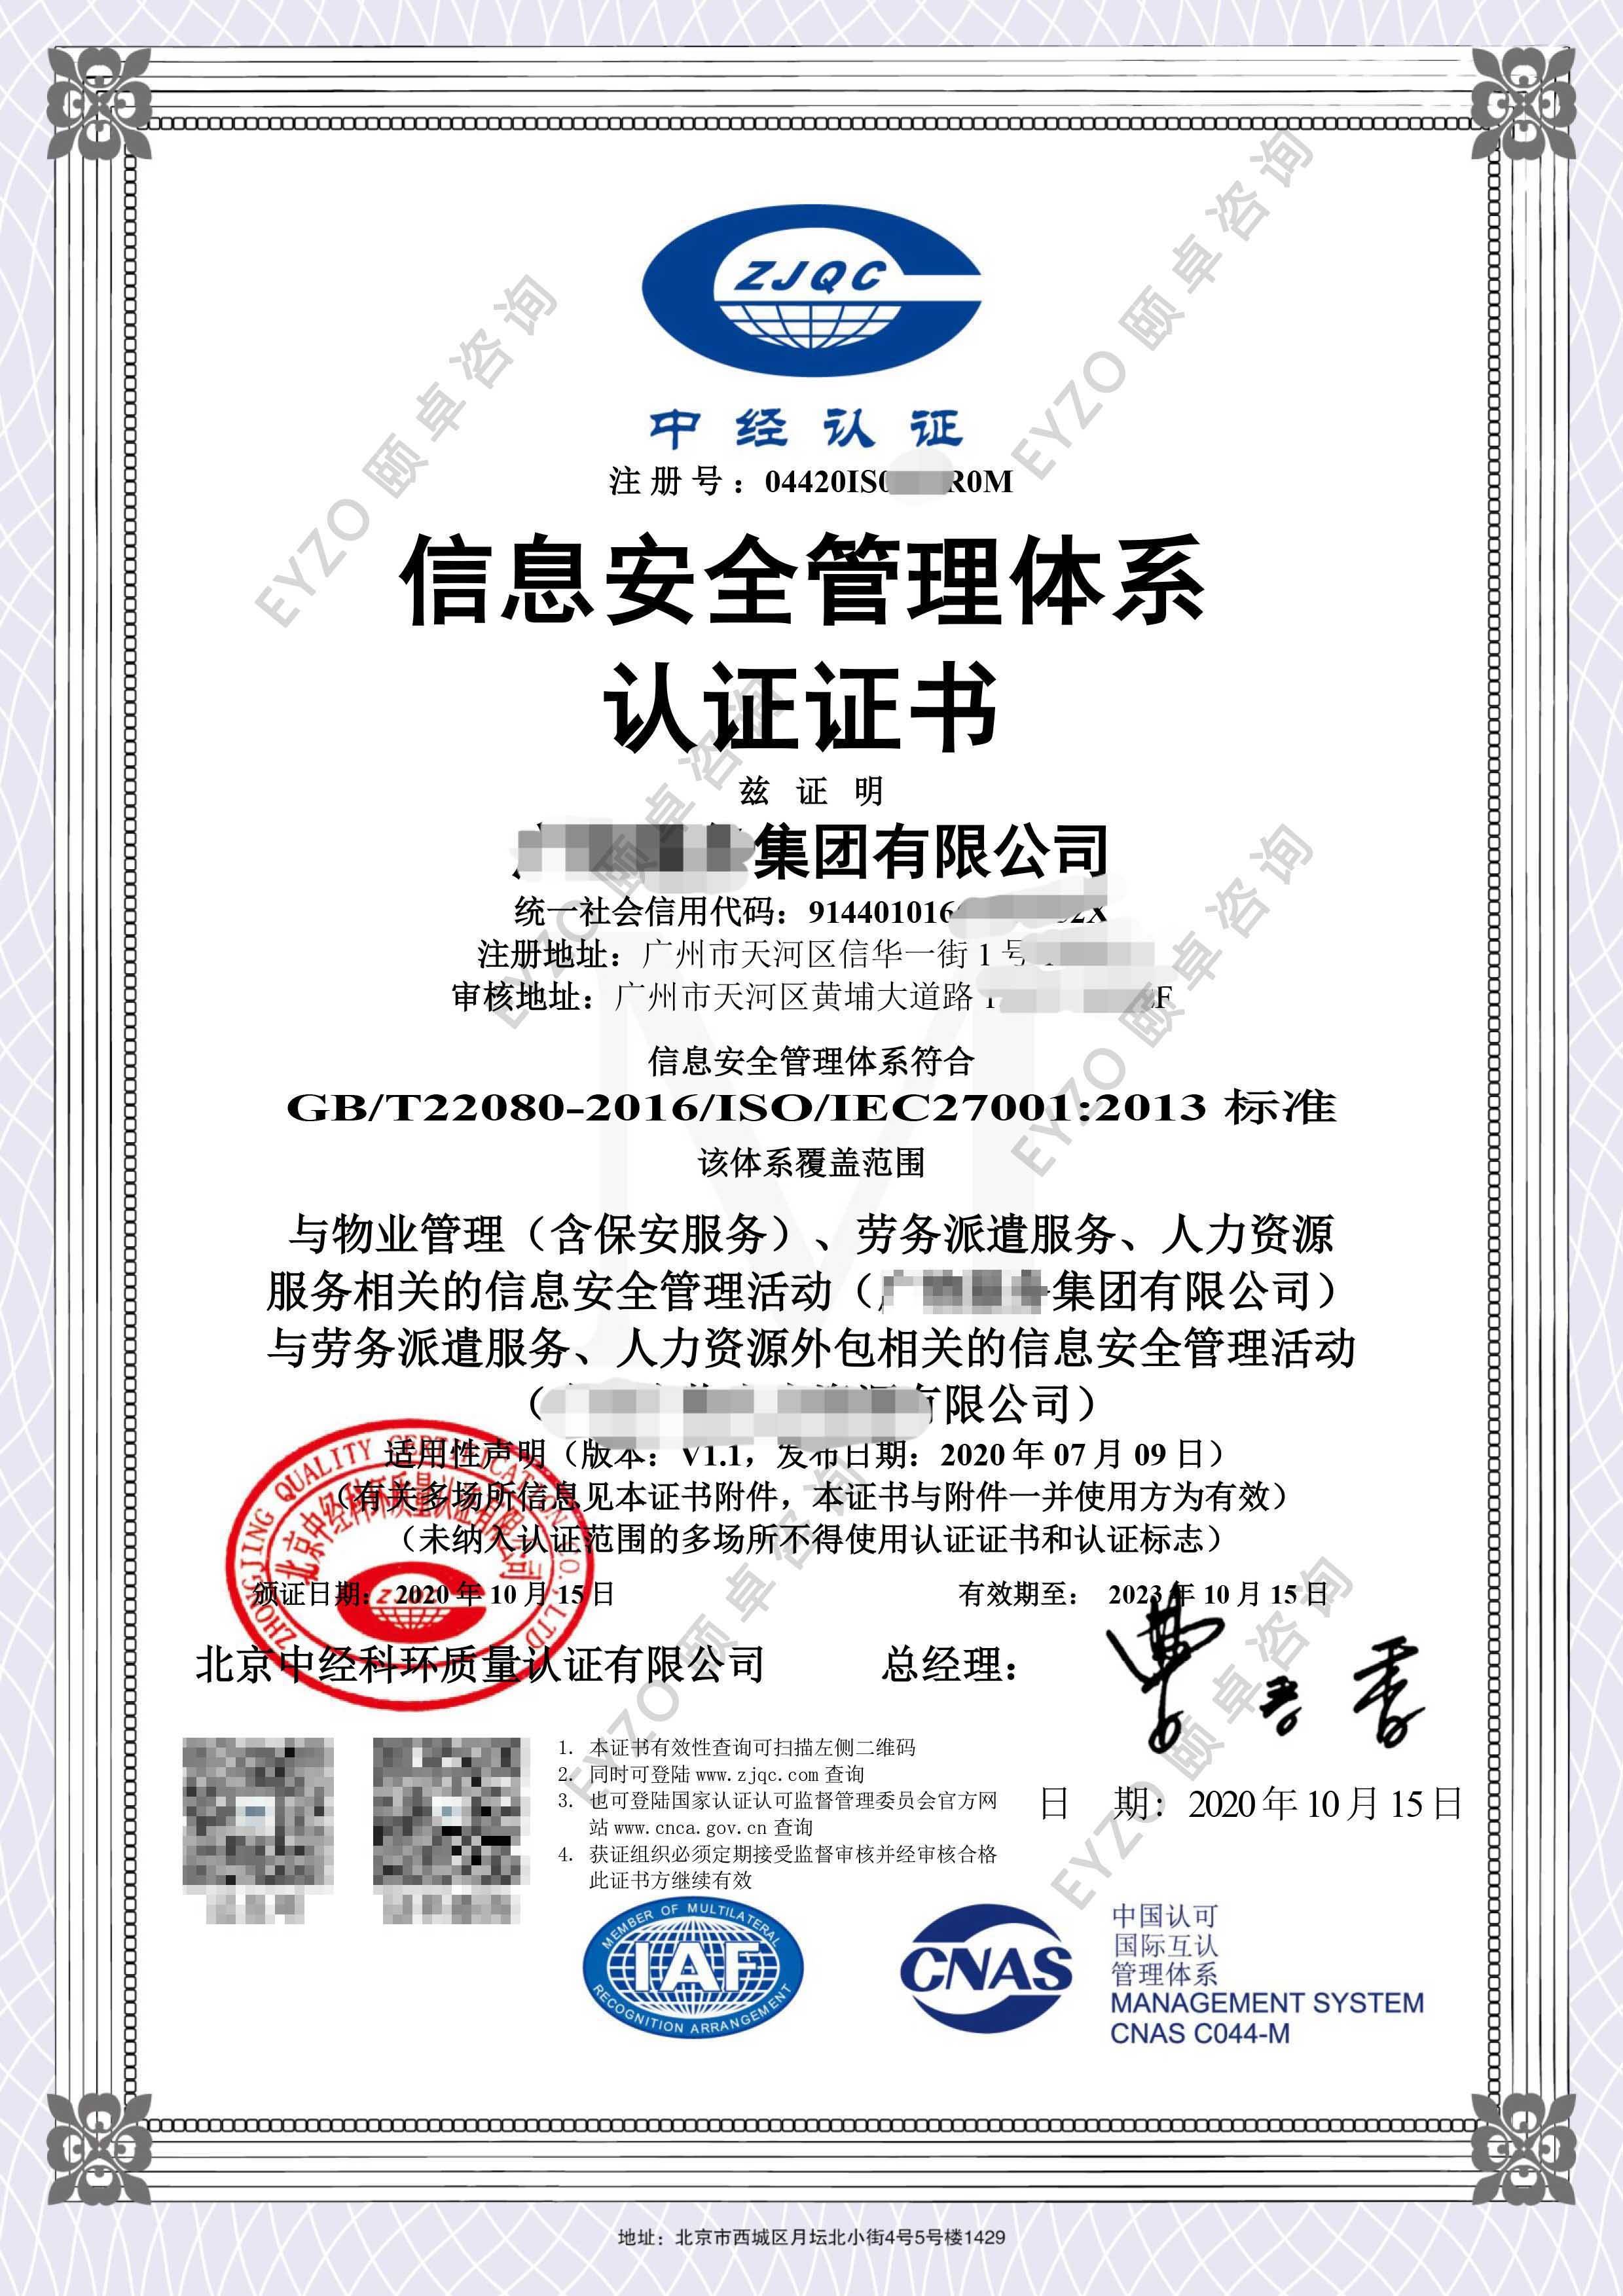 快讯| 祝贺:广物服务集团顺利通过iso/iec27001信息安全管理体系认证